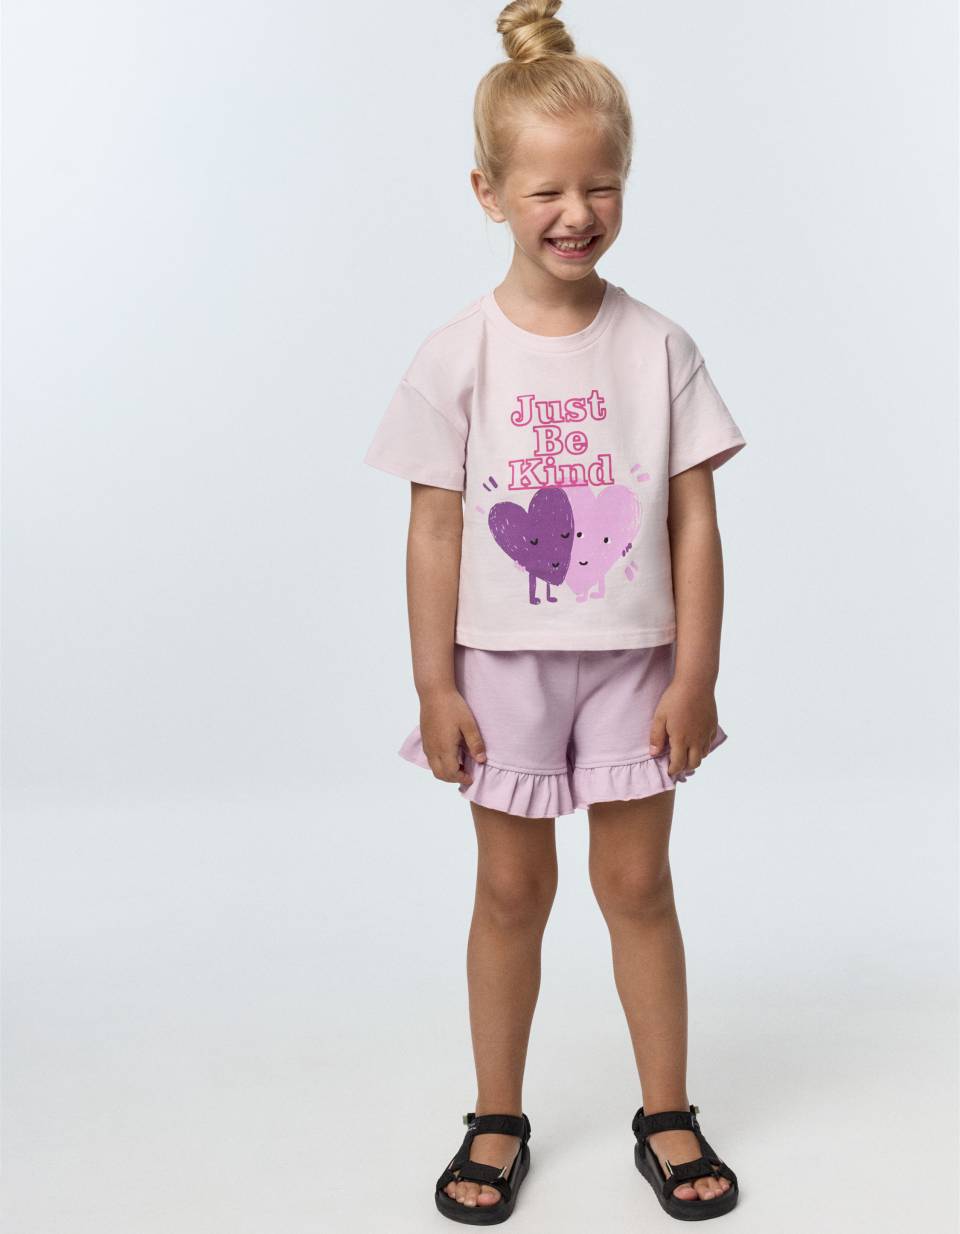 Комплект из футболки и шорт для девочек футболки с рисунком радуги и леопарда для девочек день благодарения тыквы для девочек 12 месяцев осенние детские футболки